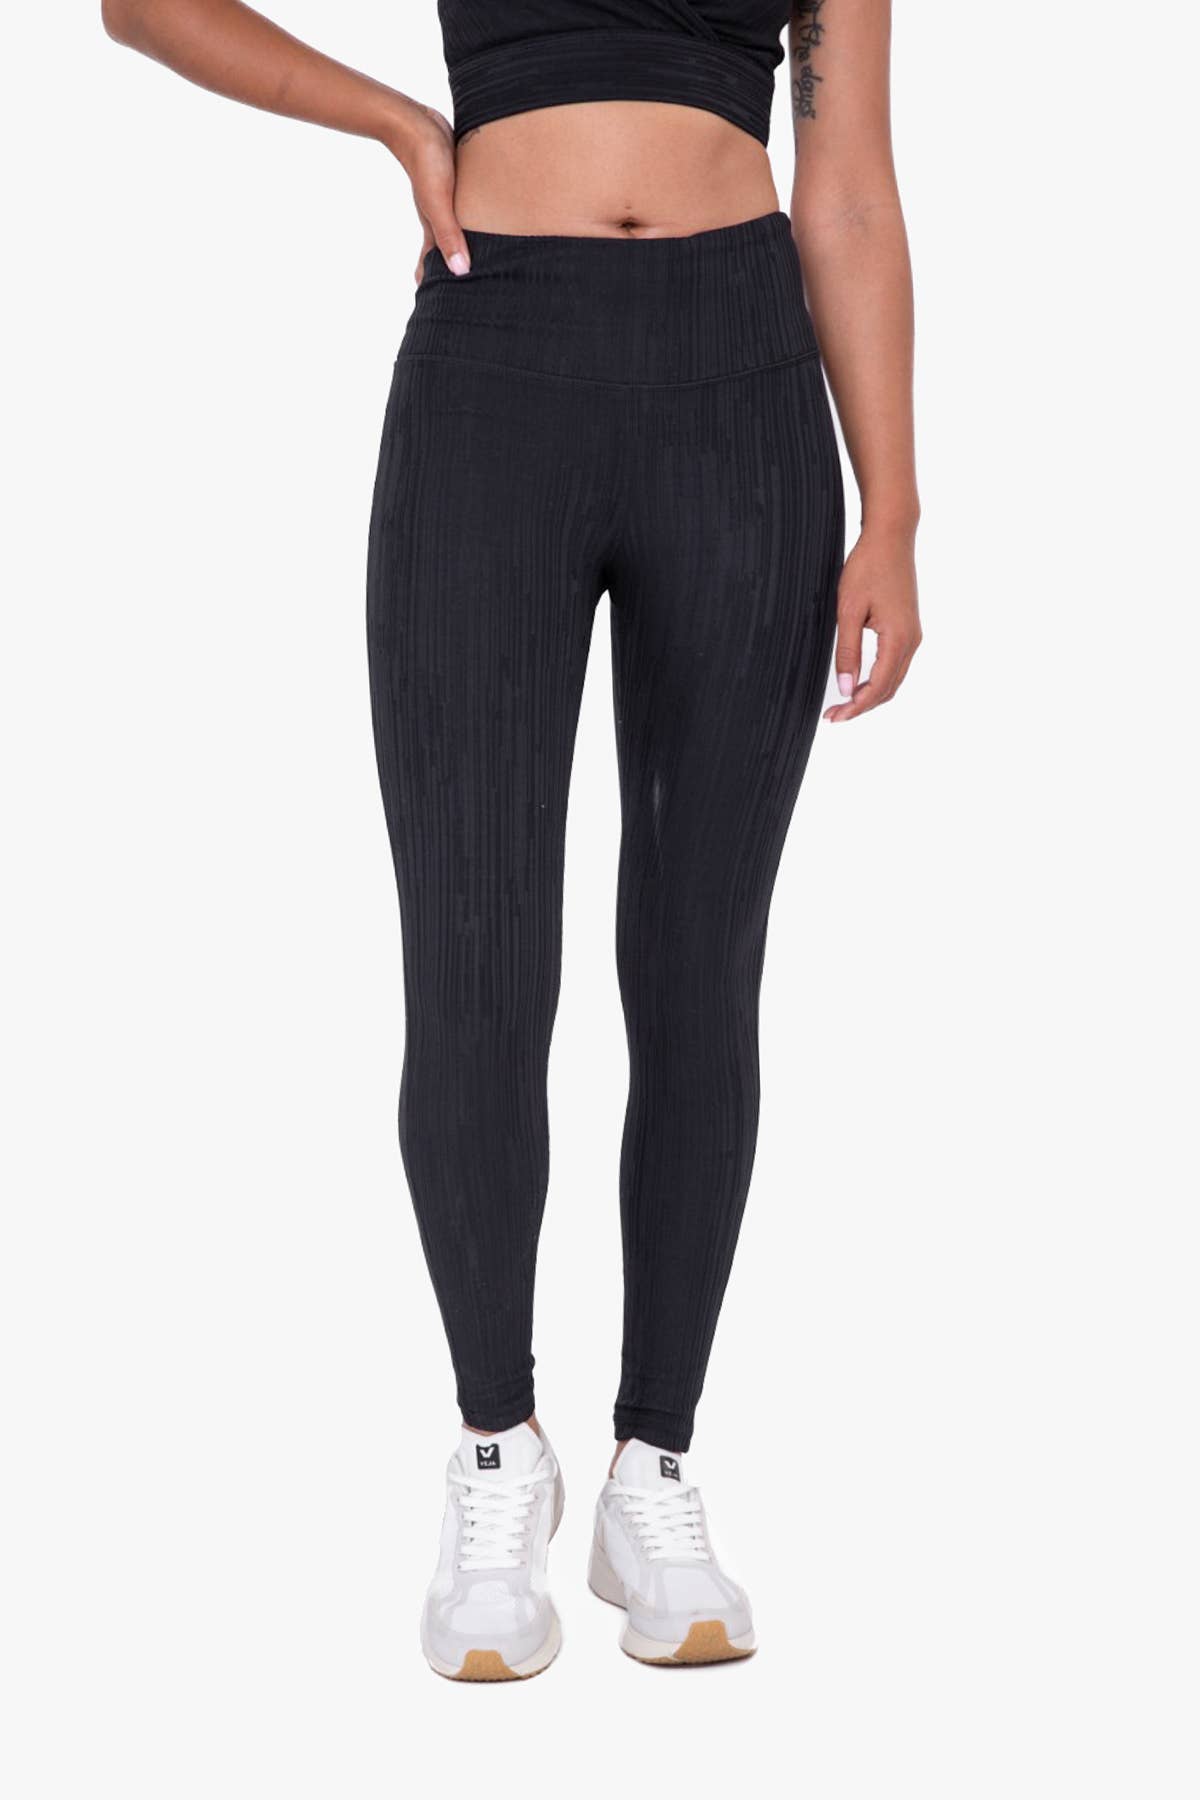 Mono B Black High Waist Foil Pebble Leggings Full Length Activewear Yoga  Pants